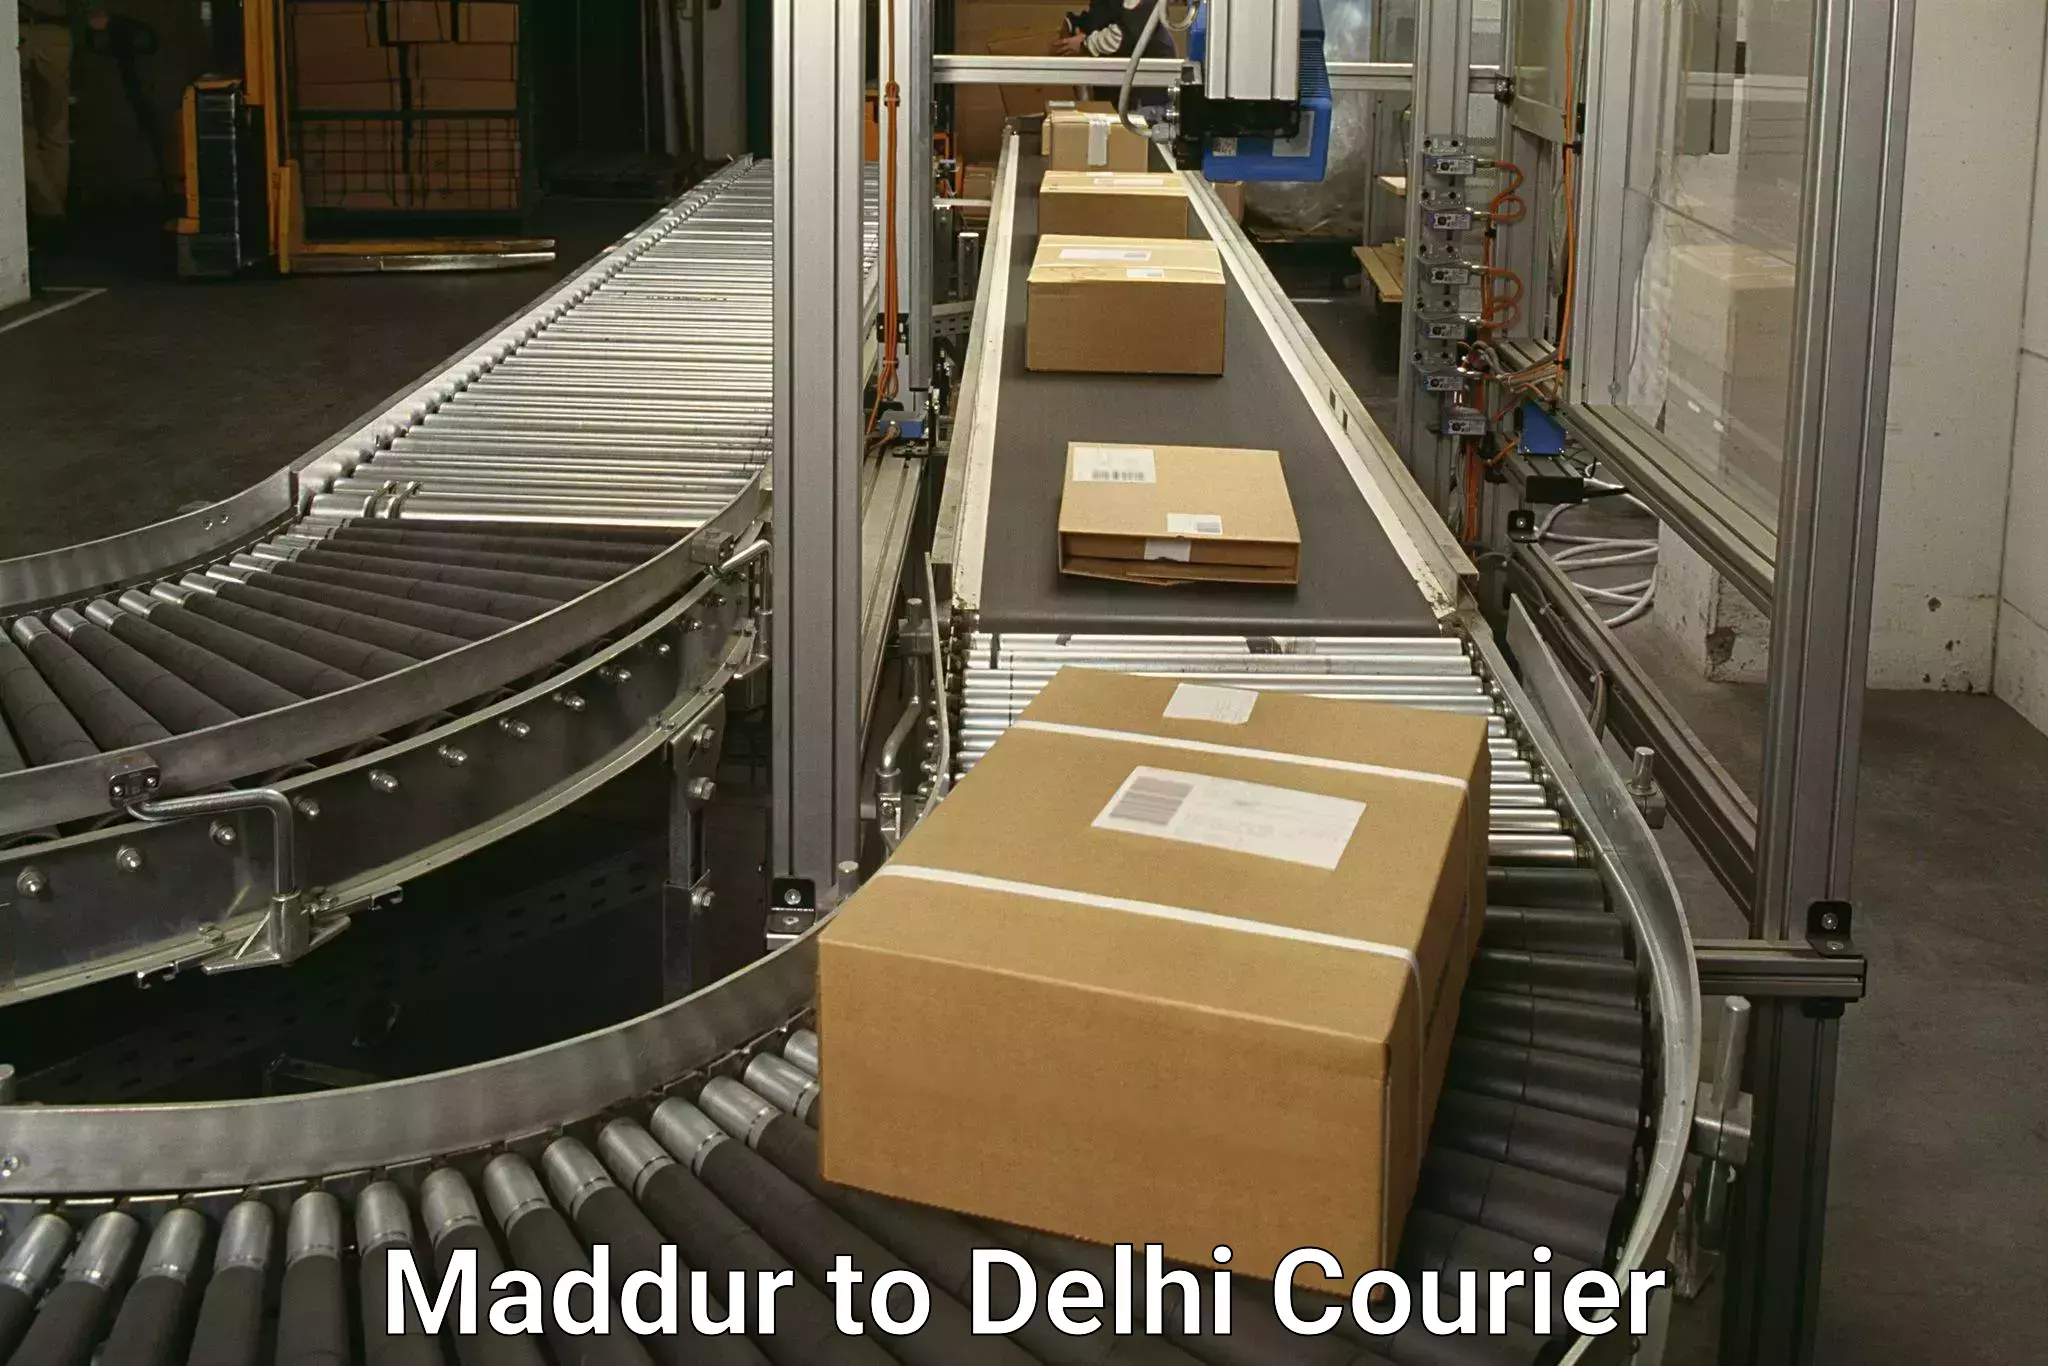 Full-service courier options Maddur to Ashok Vihar